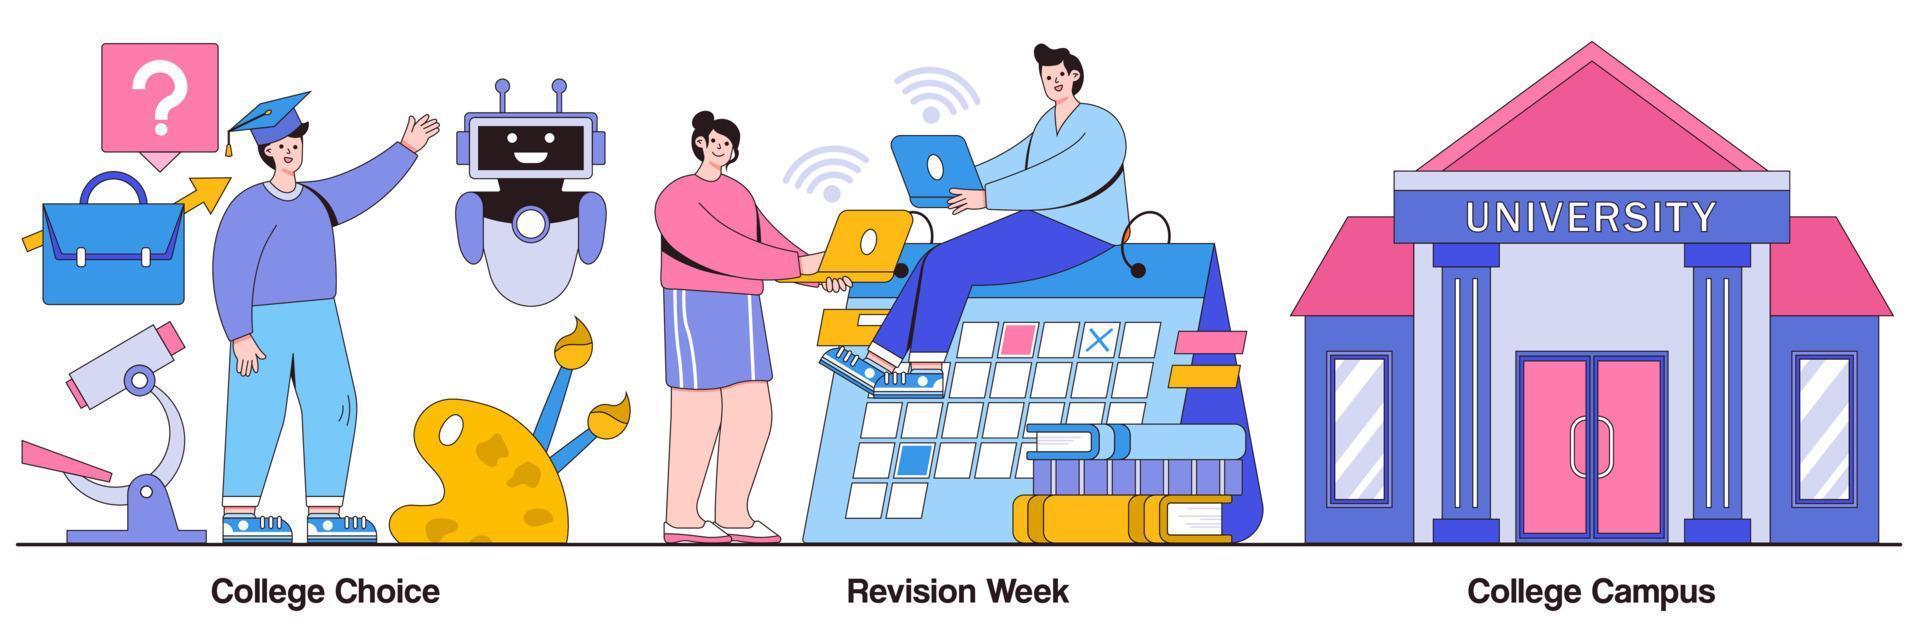 universiteitskeuze, campus en revisieweek geïllustreerd pakket vector